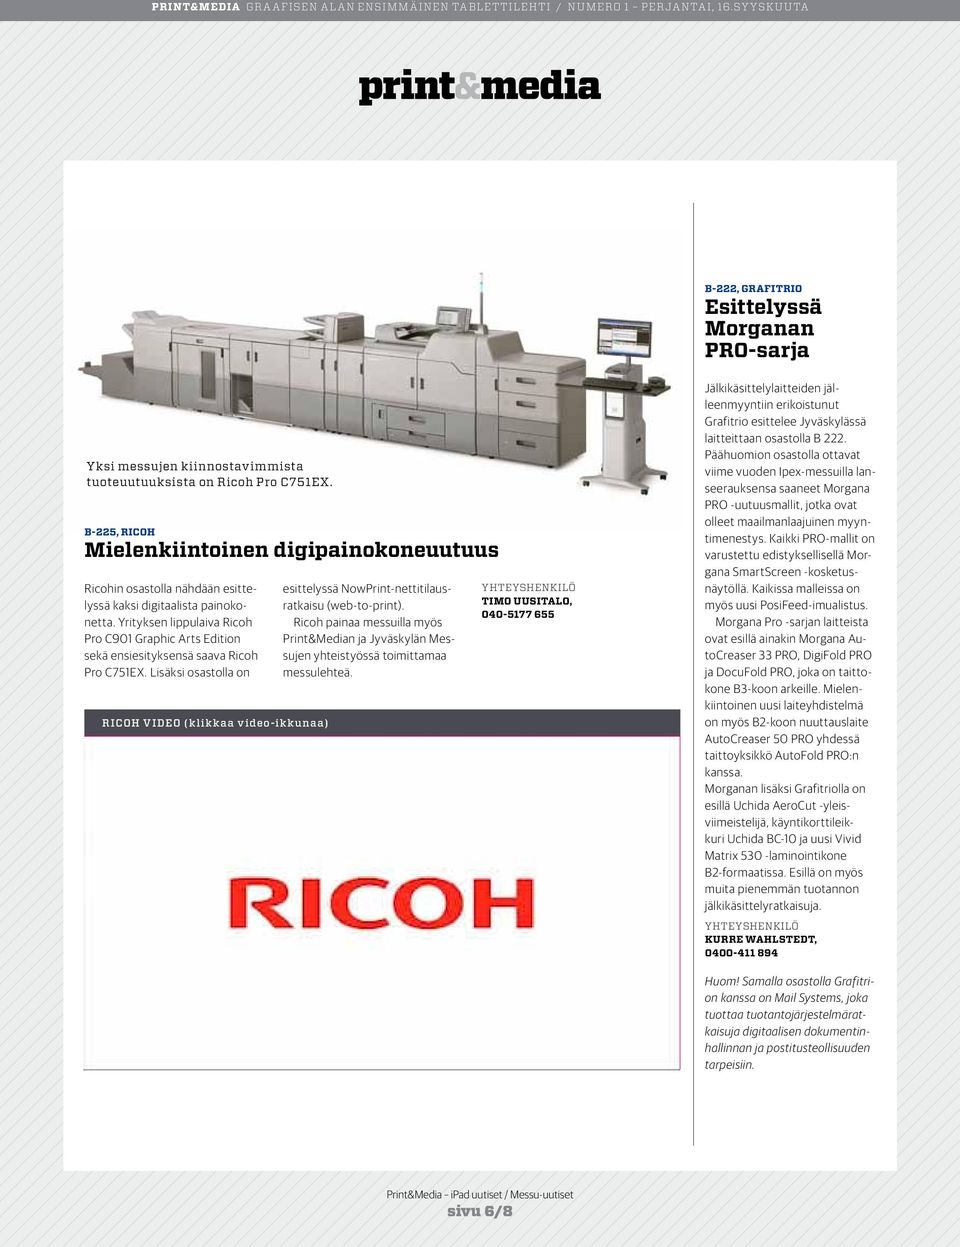 Yrityksen lippulaiva Ricoh Pro C901 Graphic Arts Edition sekä ensiesityksensä saava Ricoh Pro C751EX.